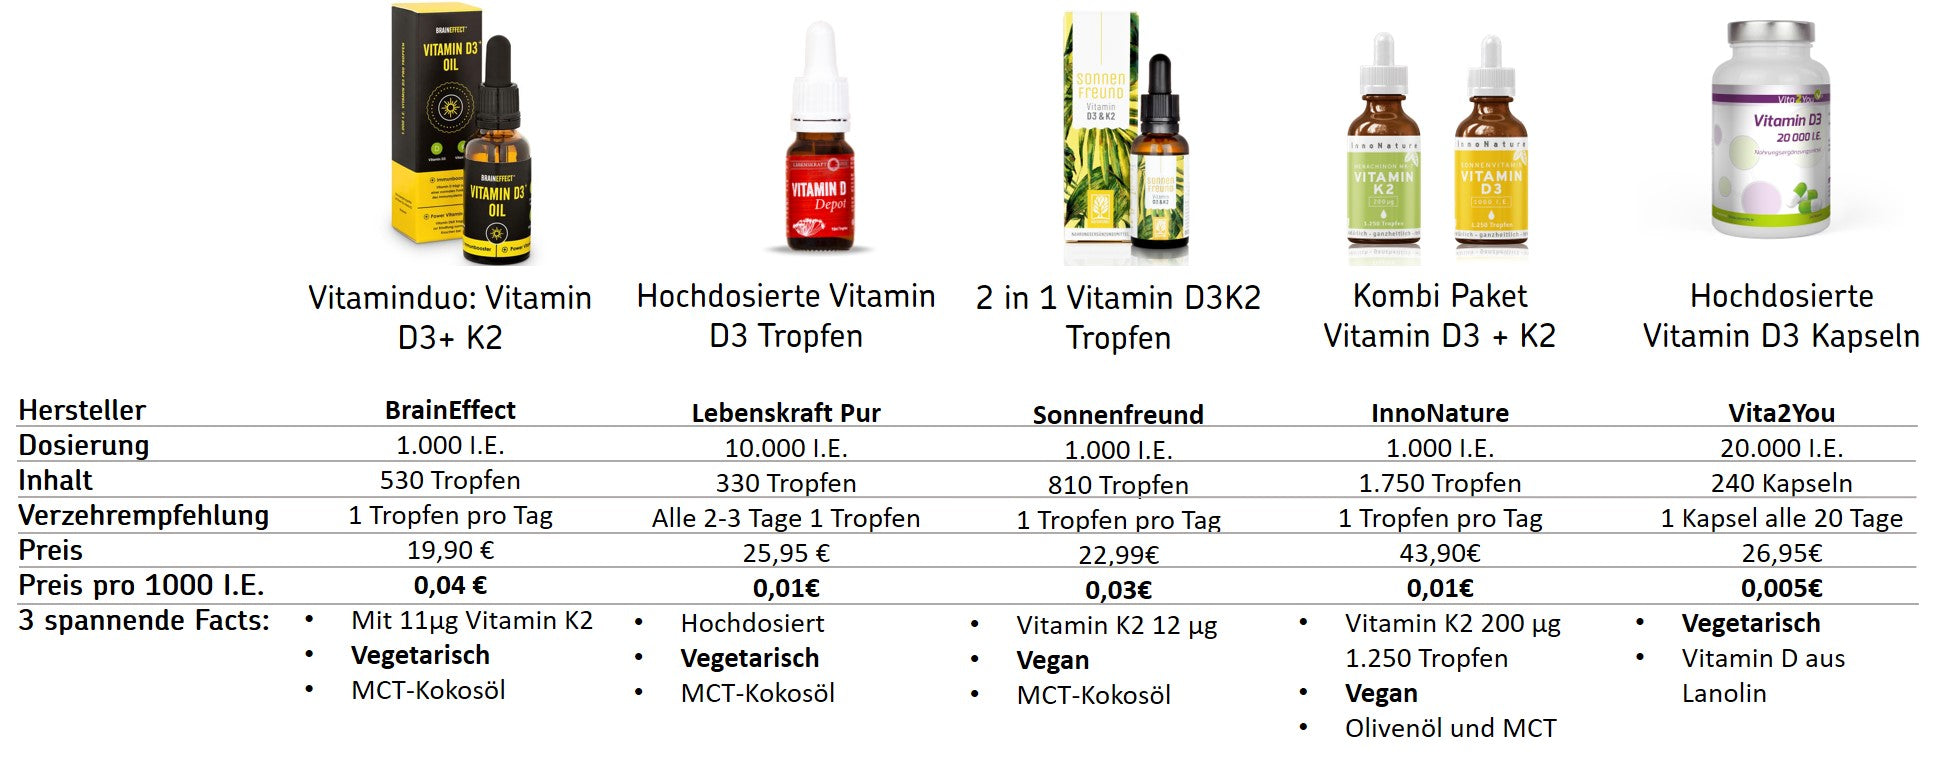 Vergleich von Vitamin-D-Präparaten